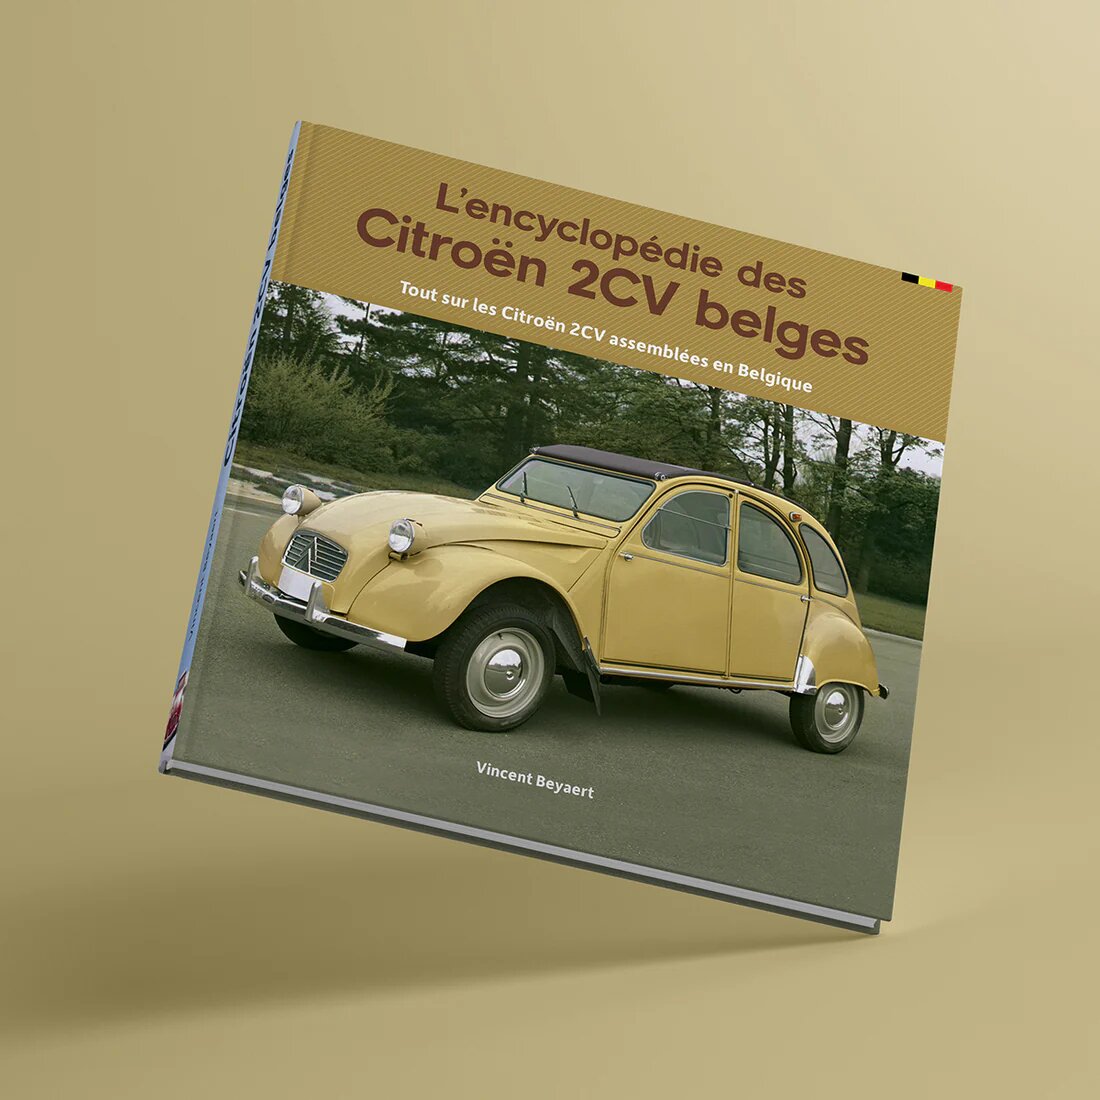 L'encyclopédie des Citroën 2CV belges (F)